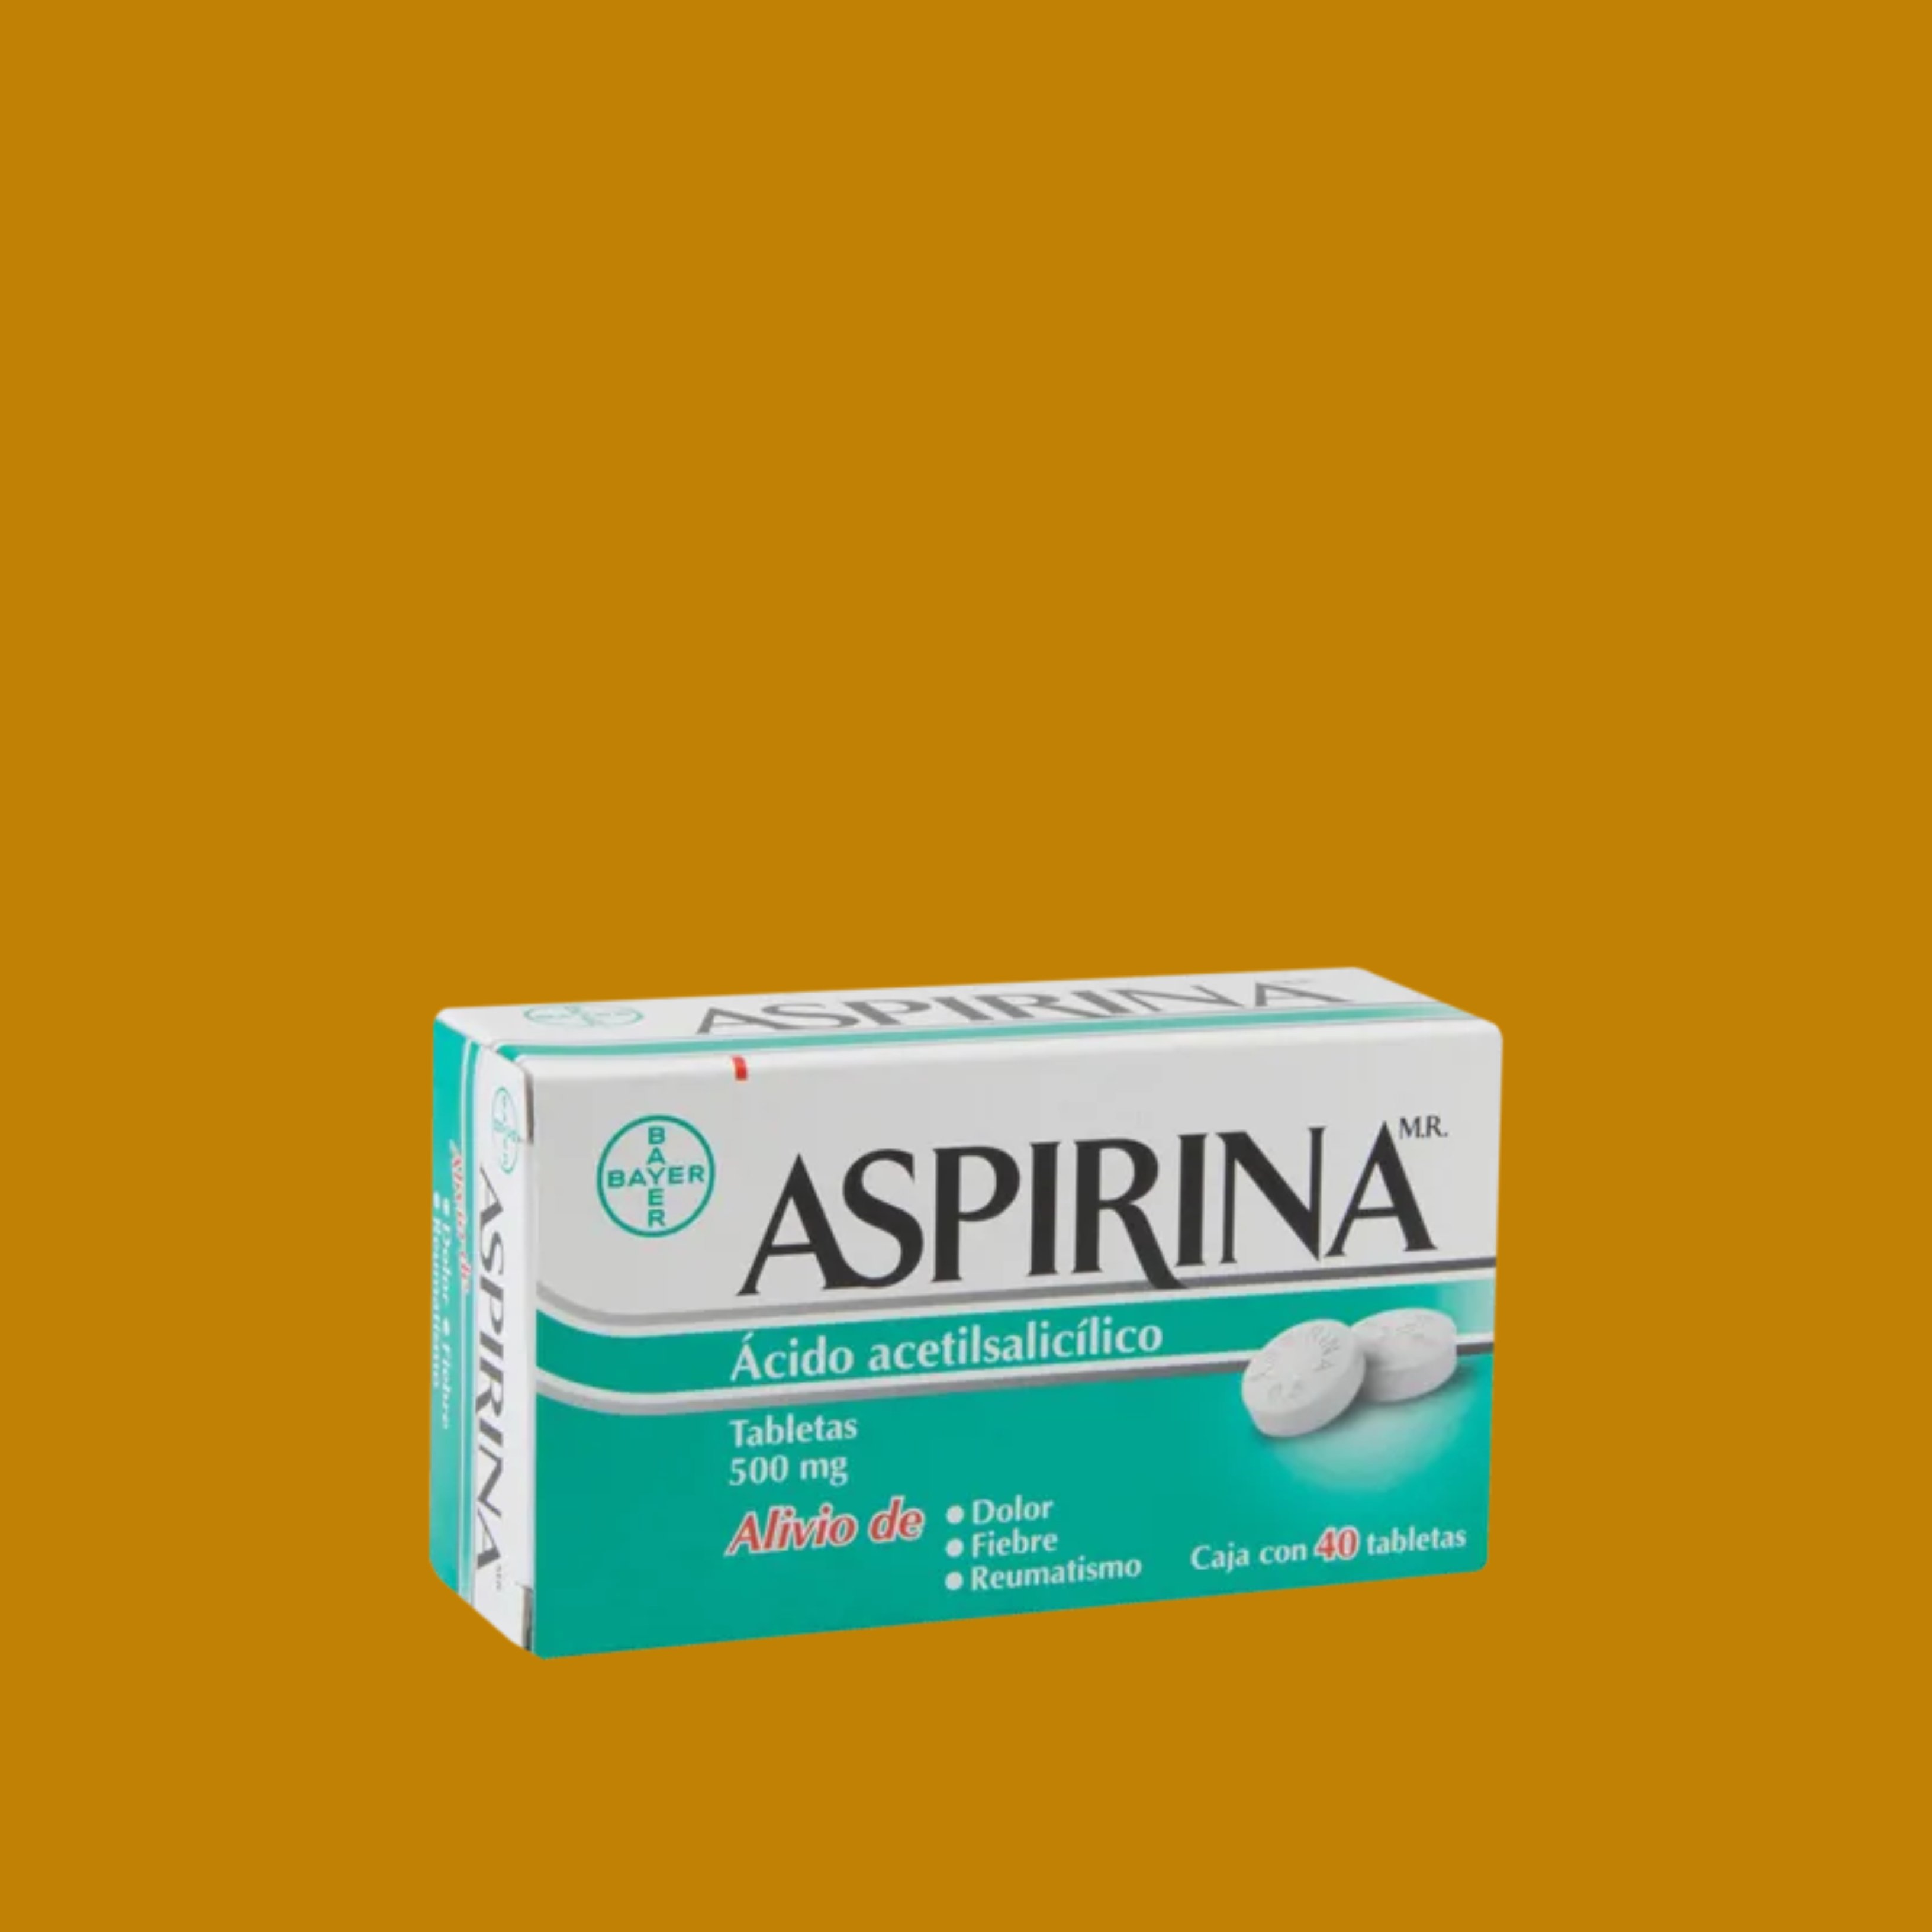 L'aspirina podria ser un fàrmac molt important contra la Covid-19